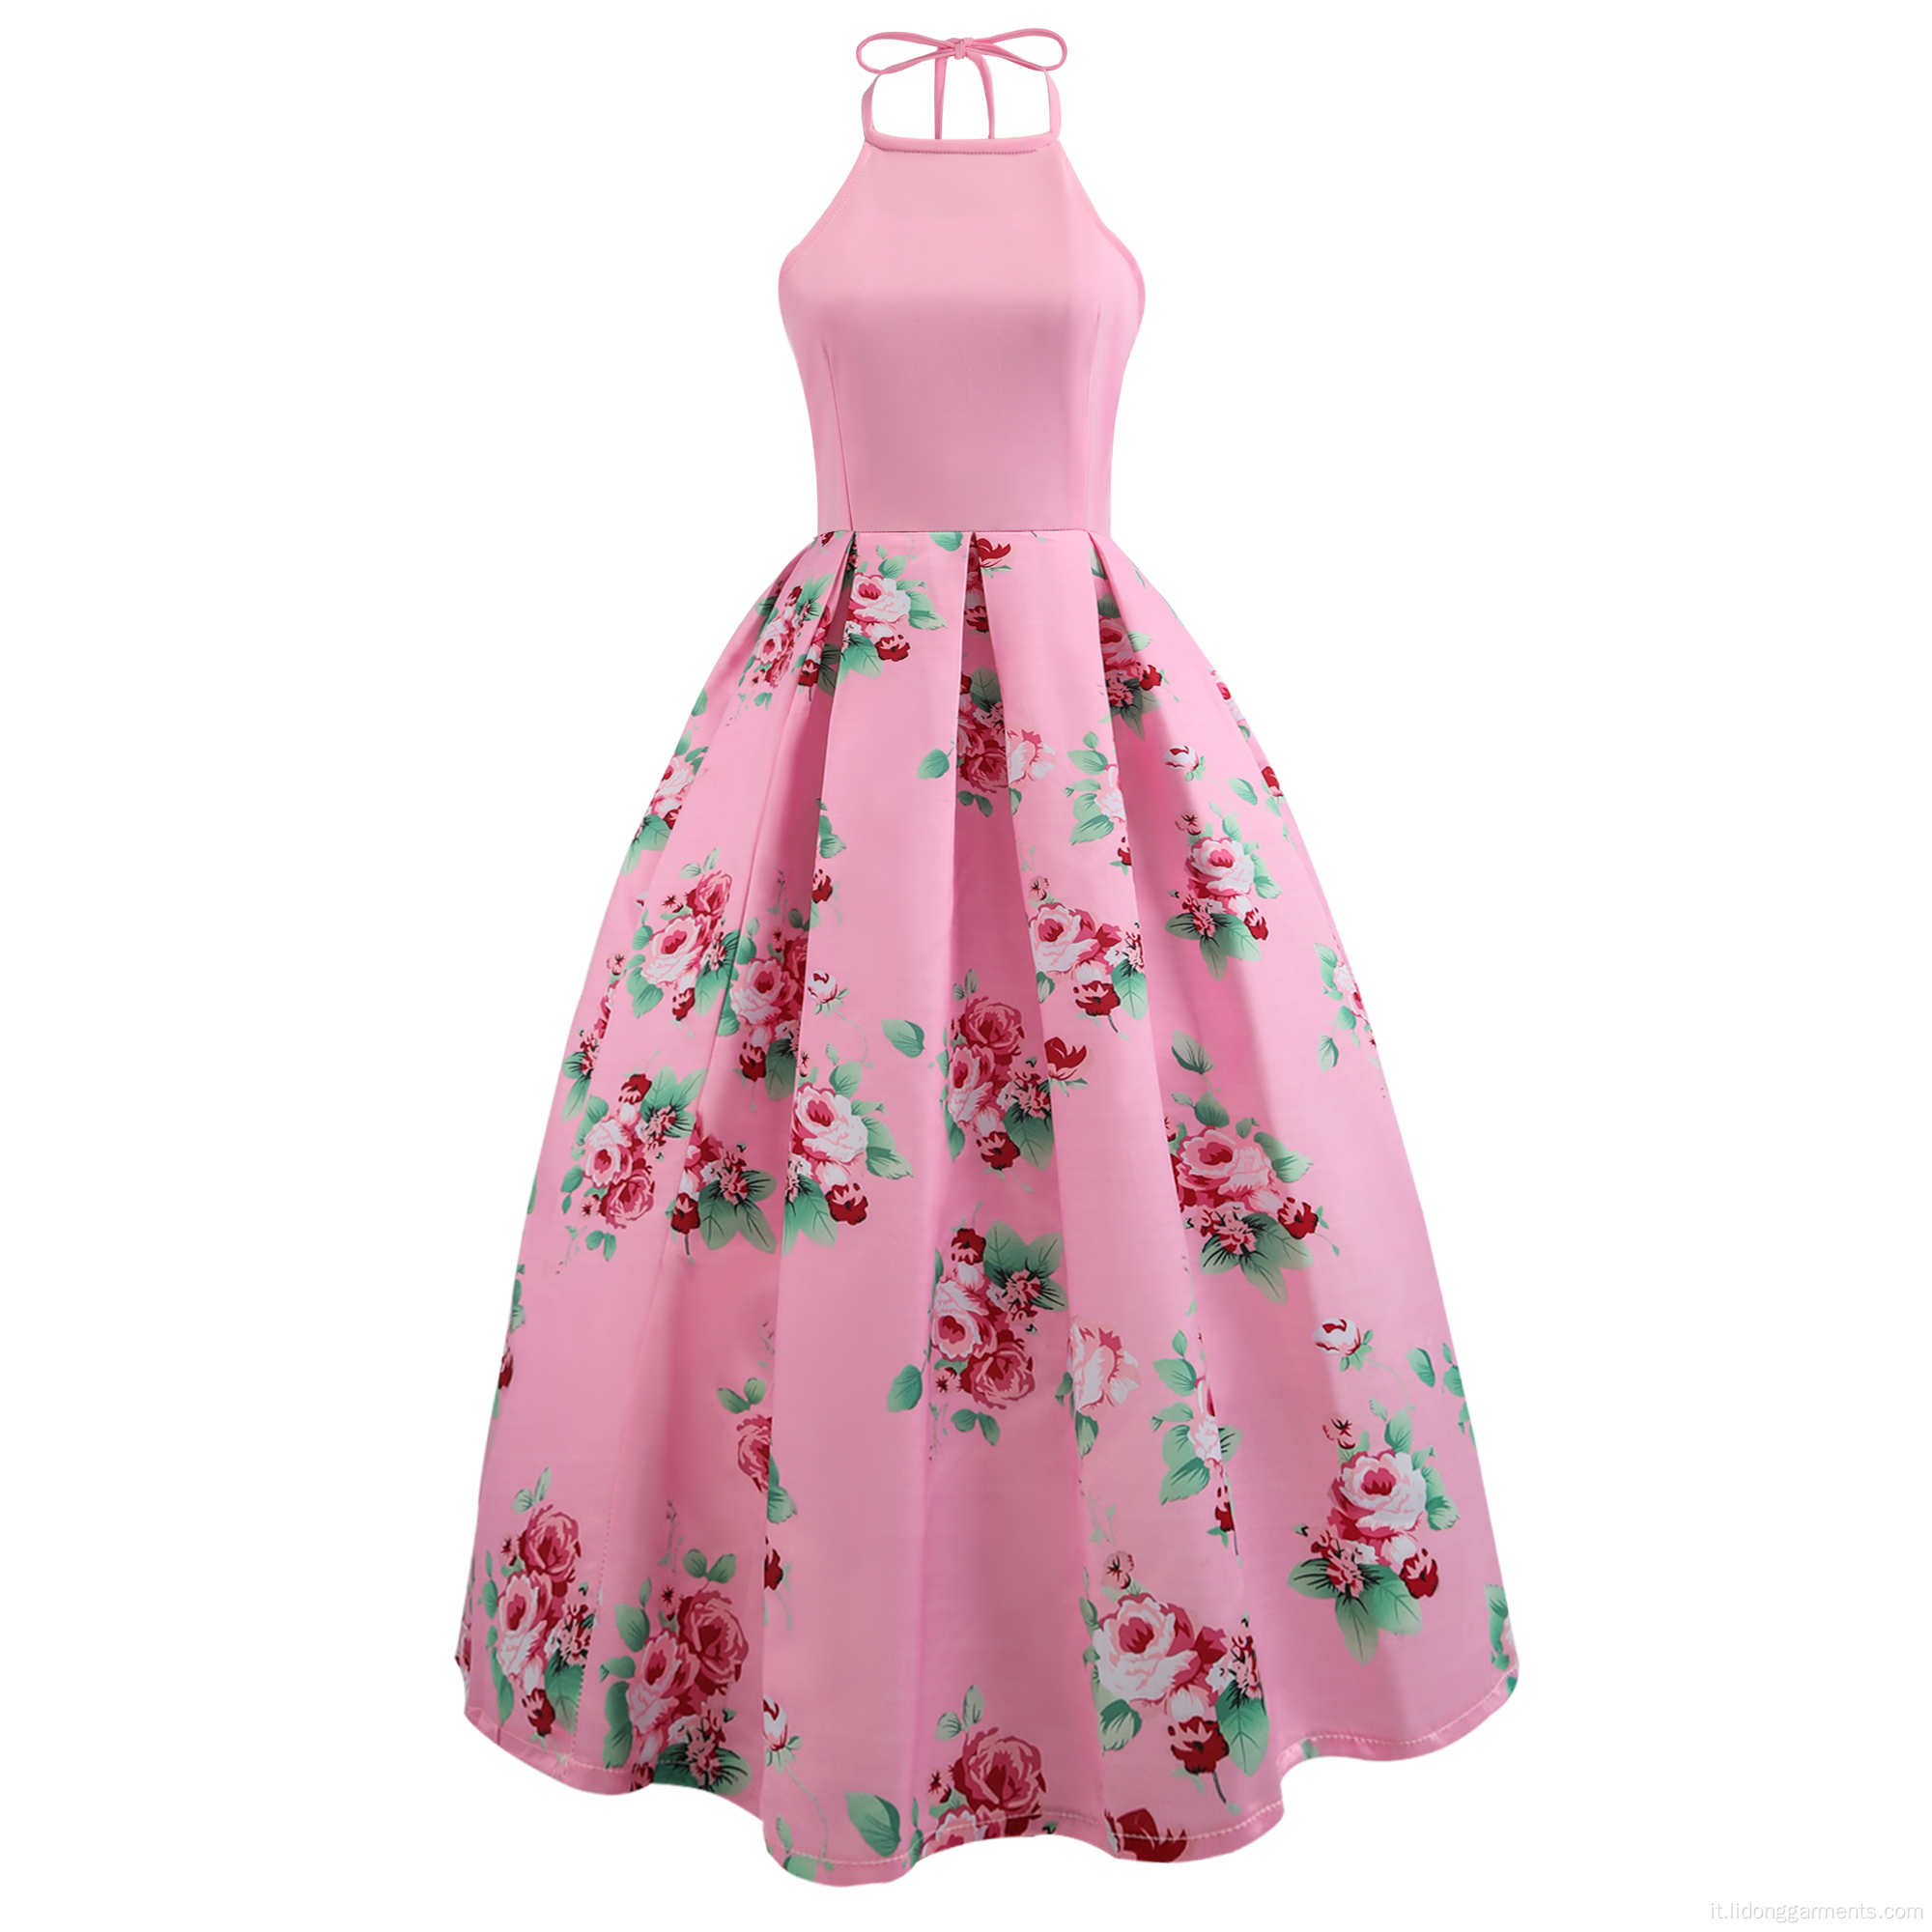 Donne Florel Halter A Line Dress Swing Dress